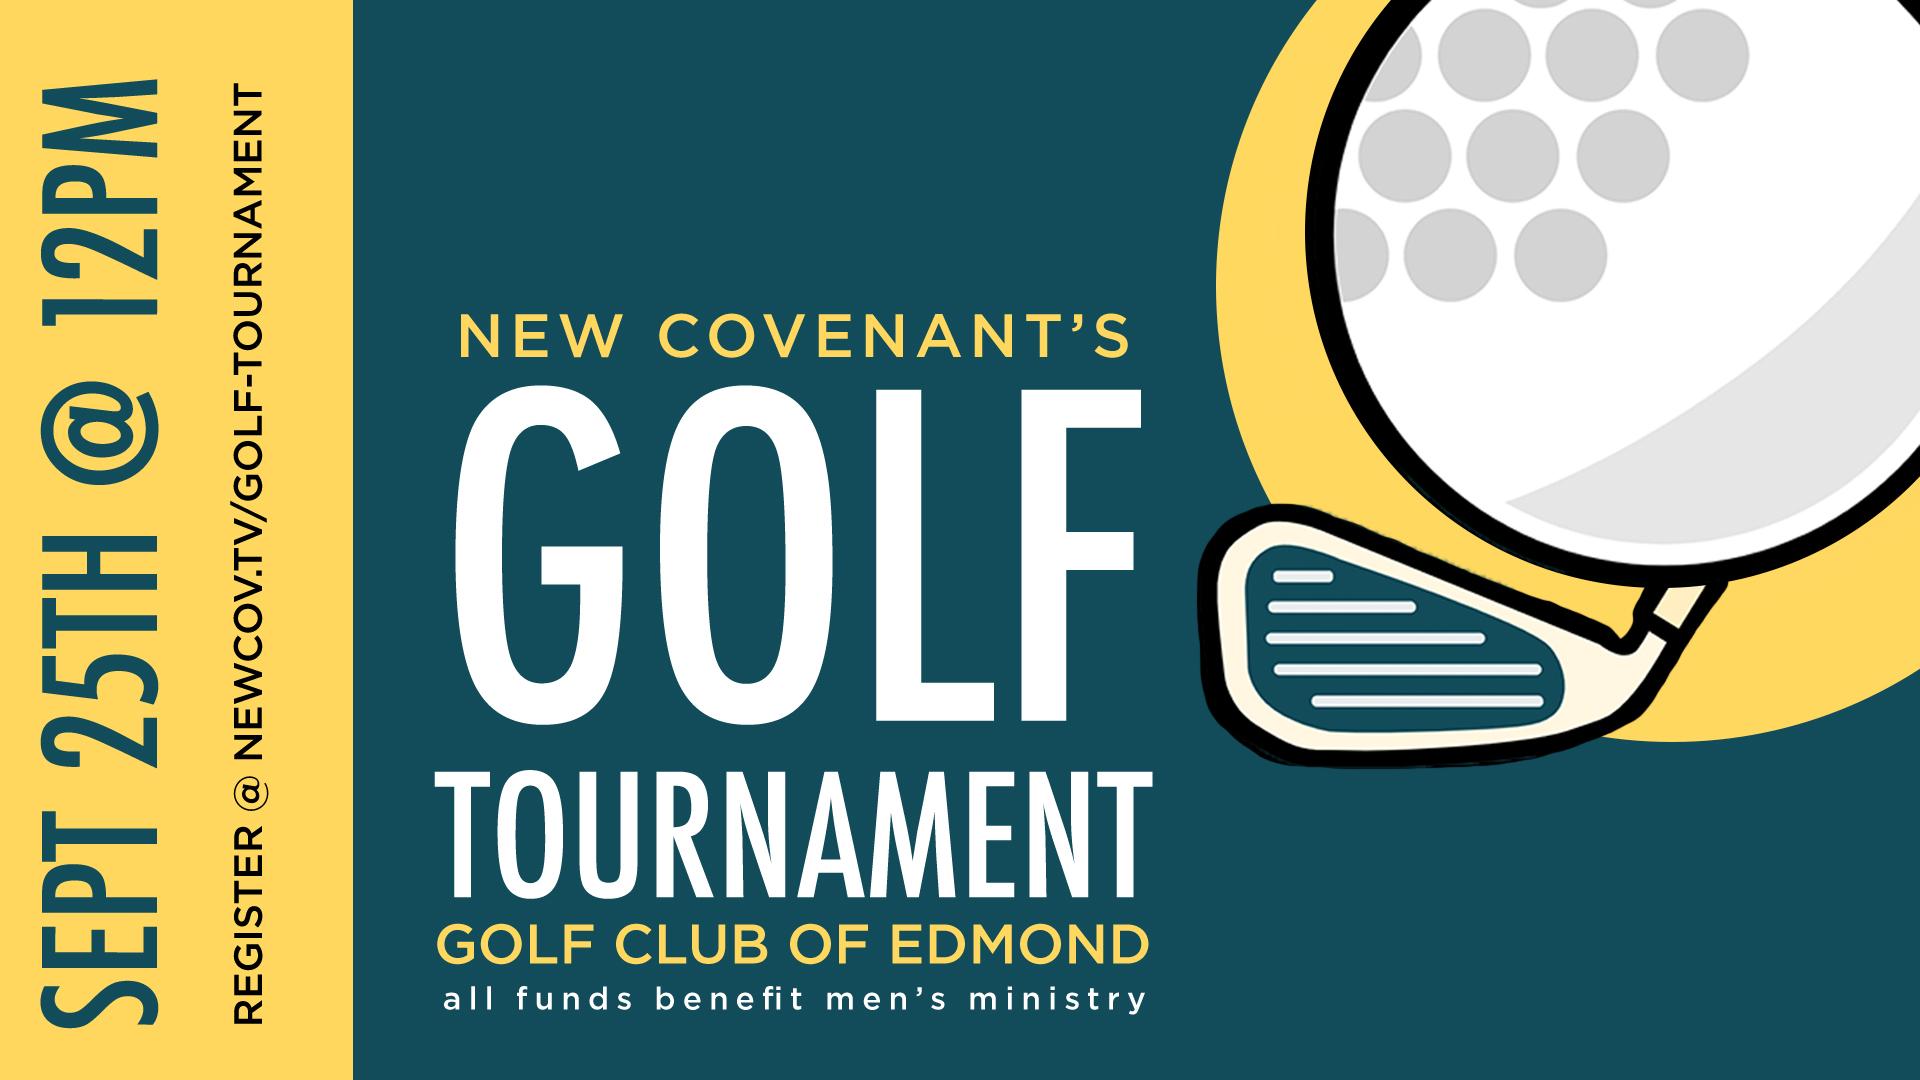 New Covenant Golf Tournament